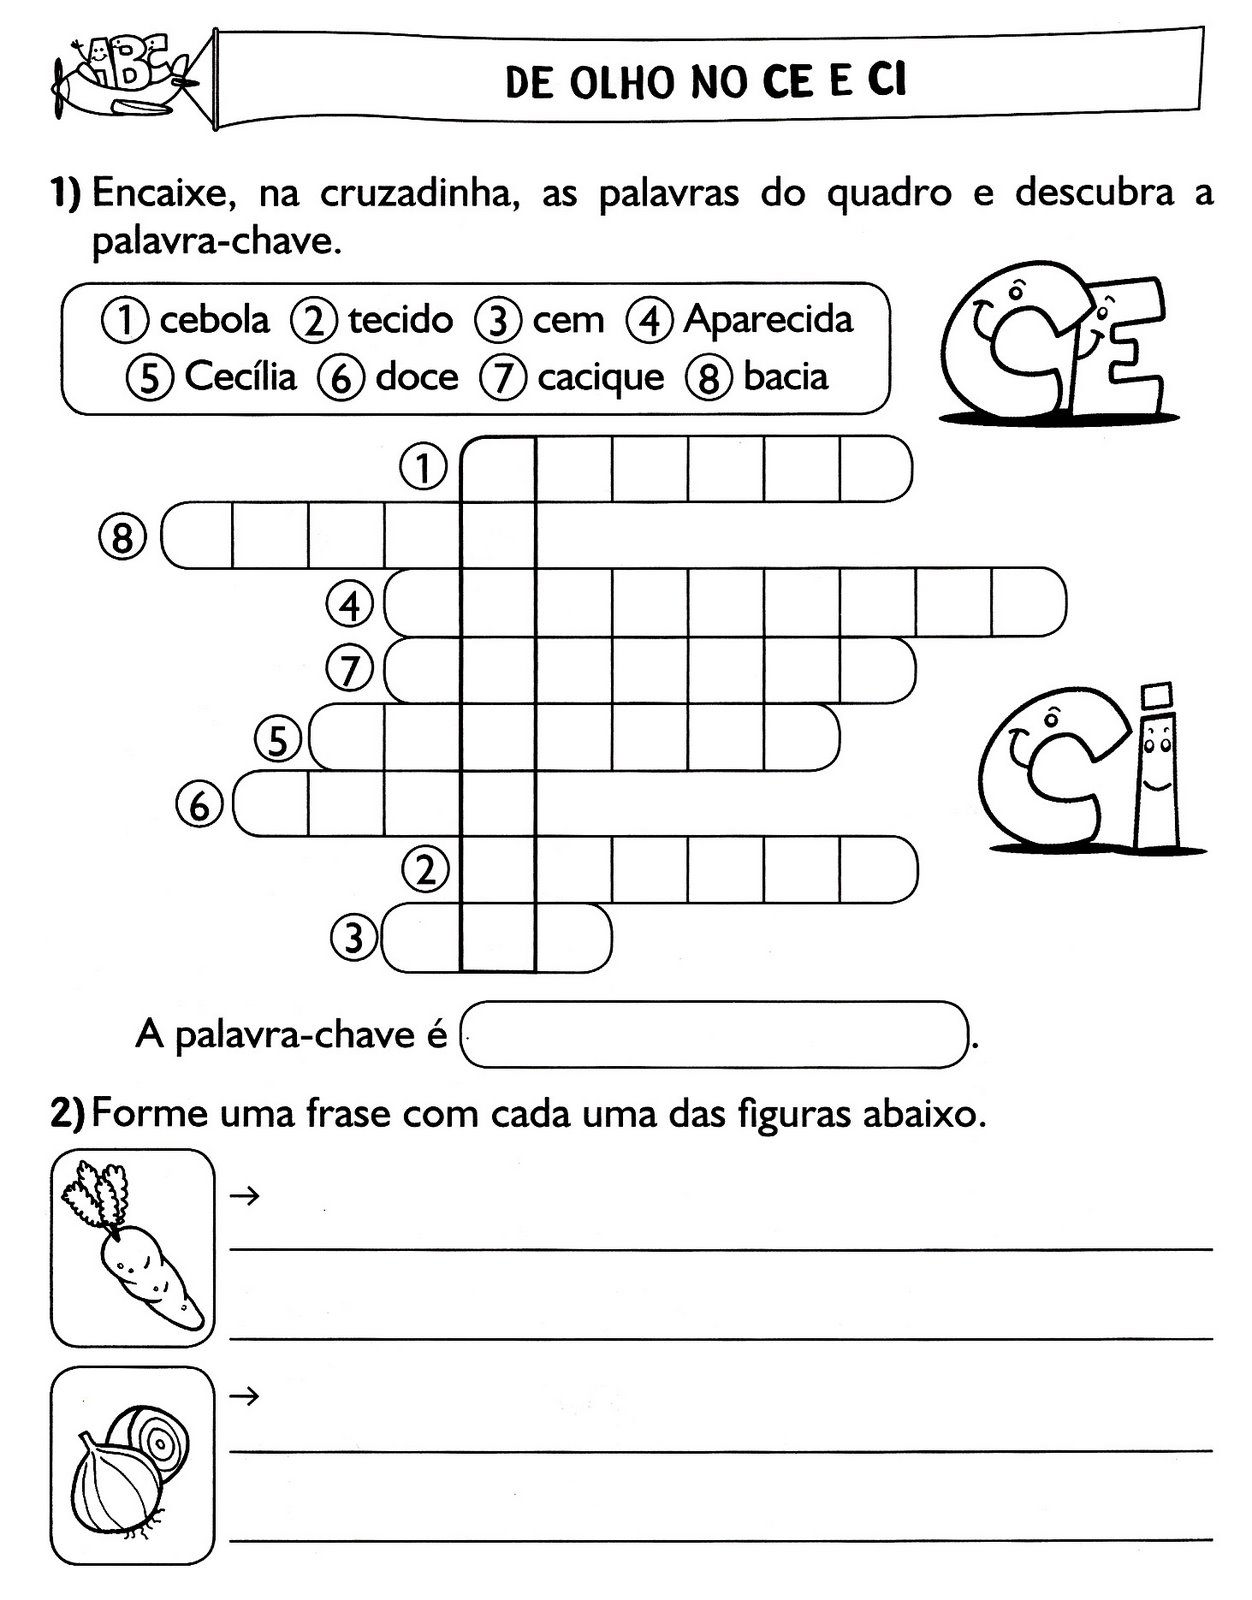 www.ensinar-aprender.blogspot.comcruzadinha ilustrada do CE-CI